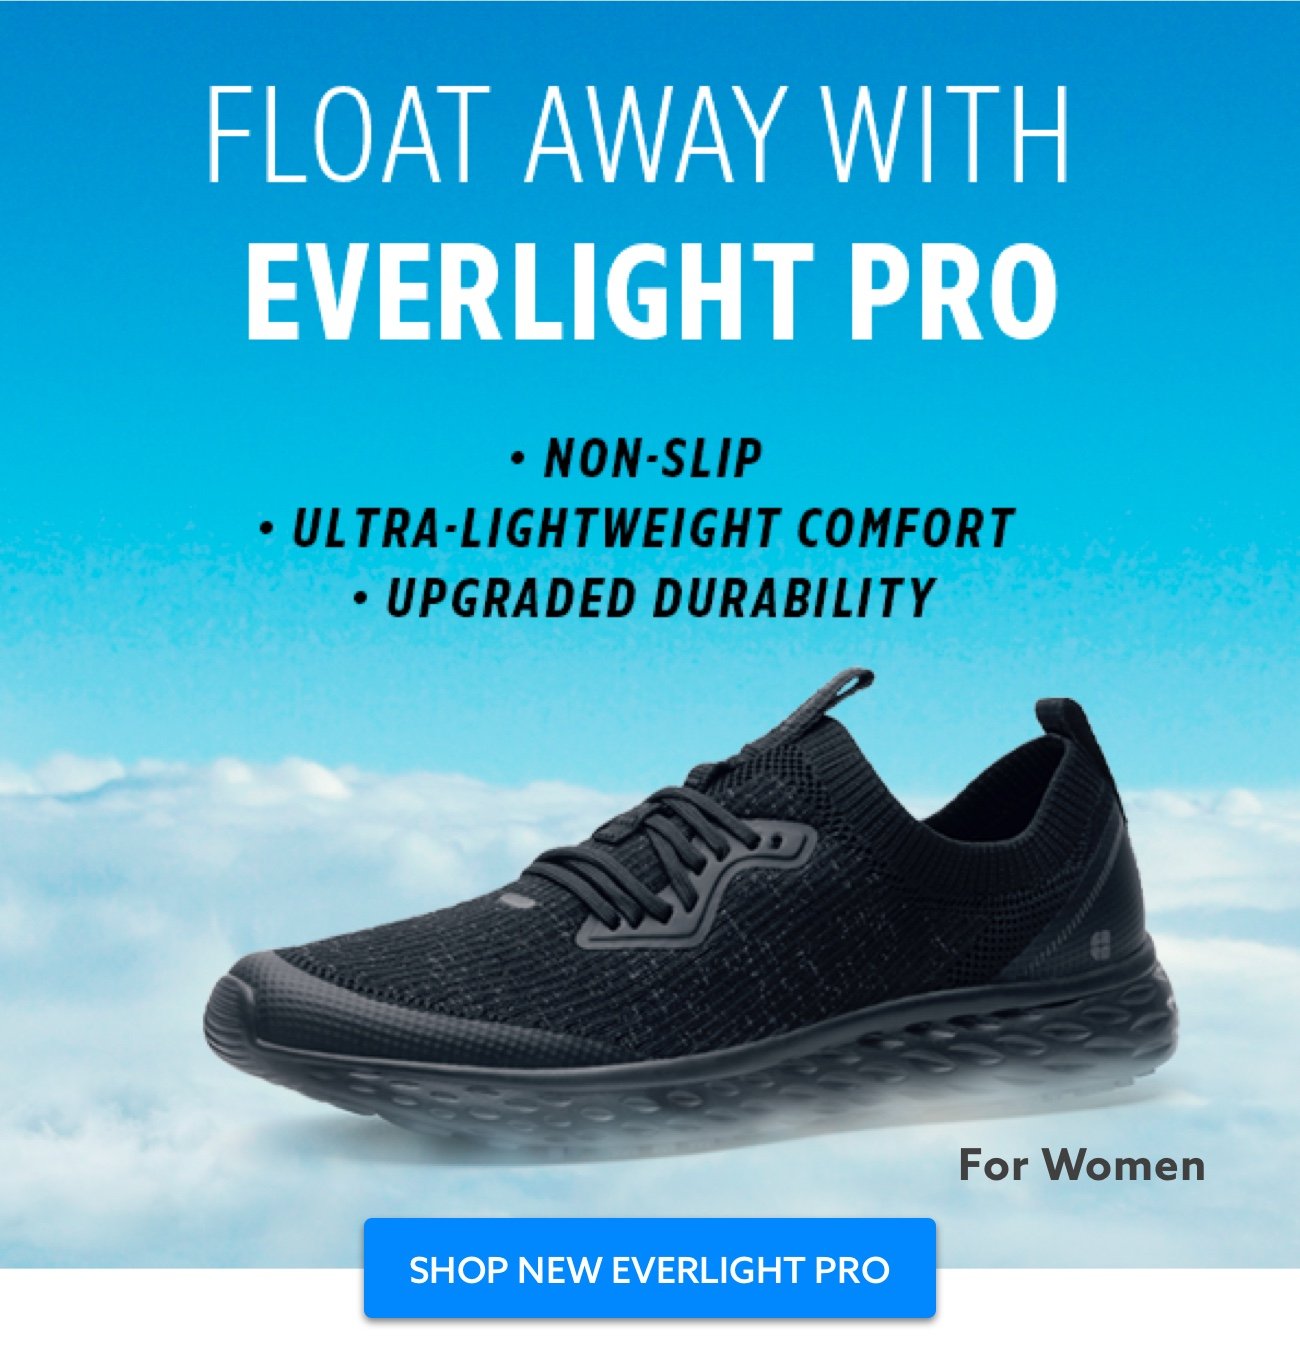 Shop new Everlight Pro for women.